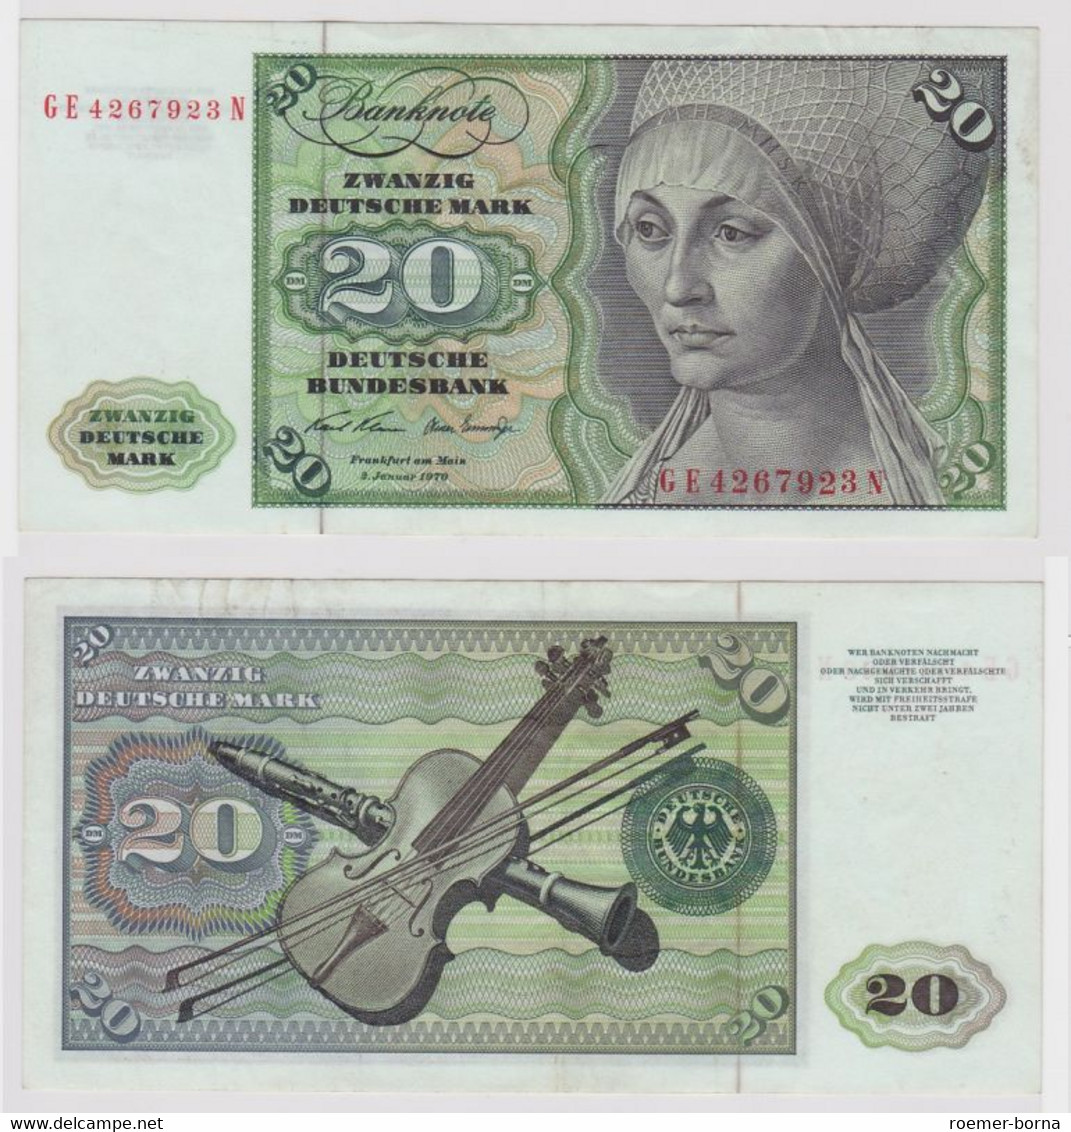 T148278 Banknote 20 DM Deutsche Mark Ro. 271b Schein 2.Jan. 1970 KN GE 4267923 N - 20 DM